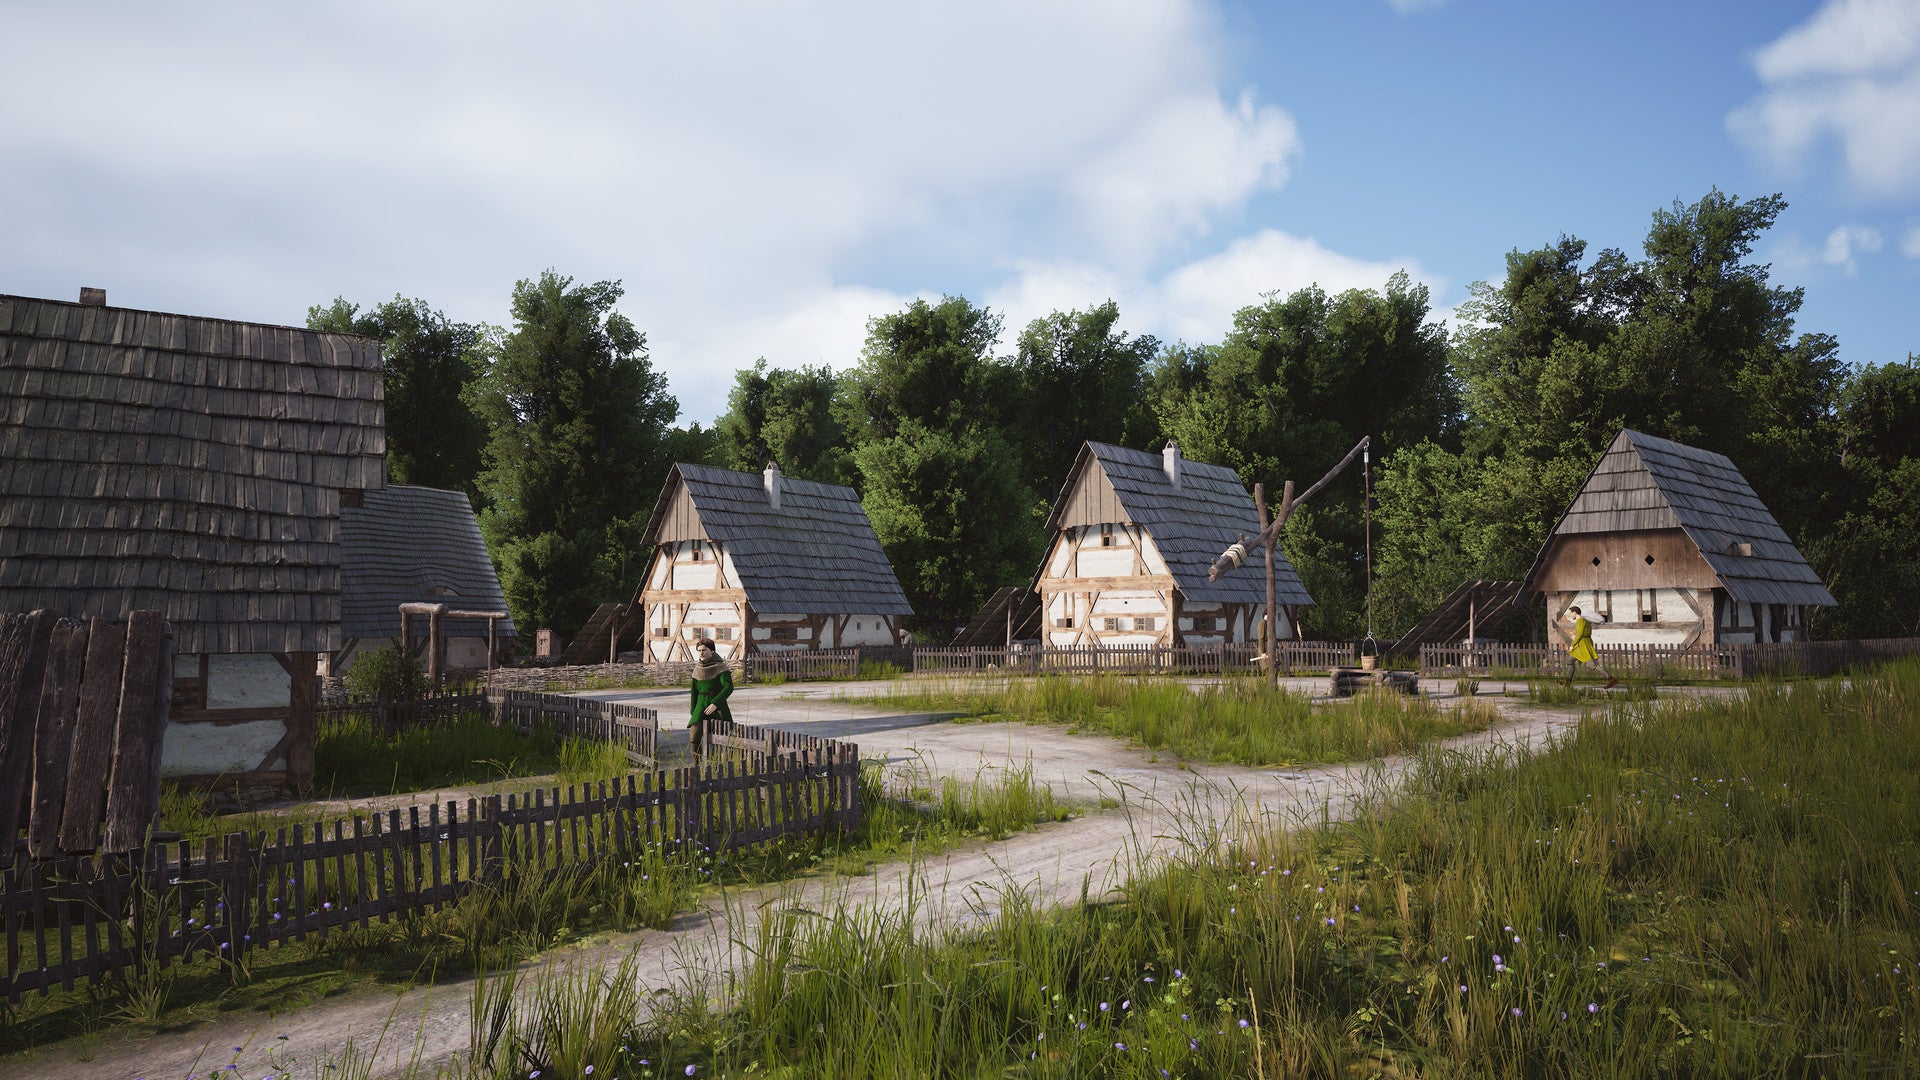 Un gruppo di case medievali con tetti di paglia e muri di terra si trovano in una campagna con erba verde scura e cielo blu ma nuvoloso.